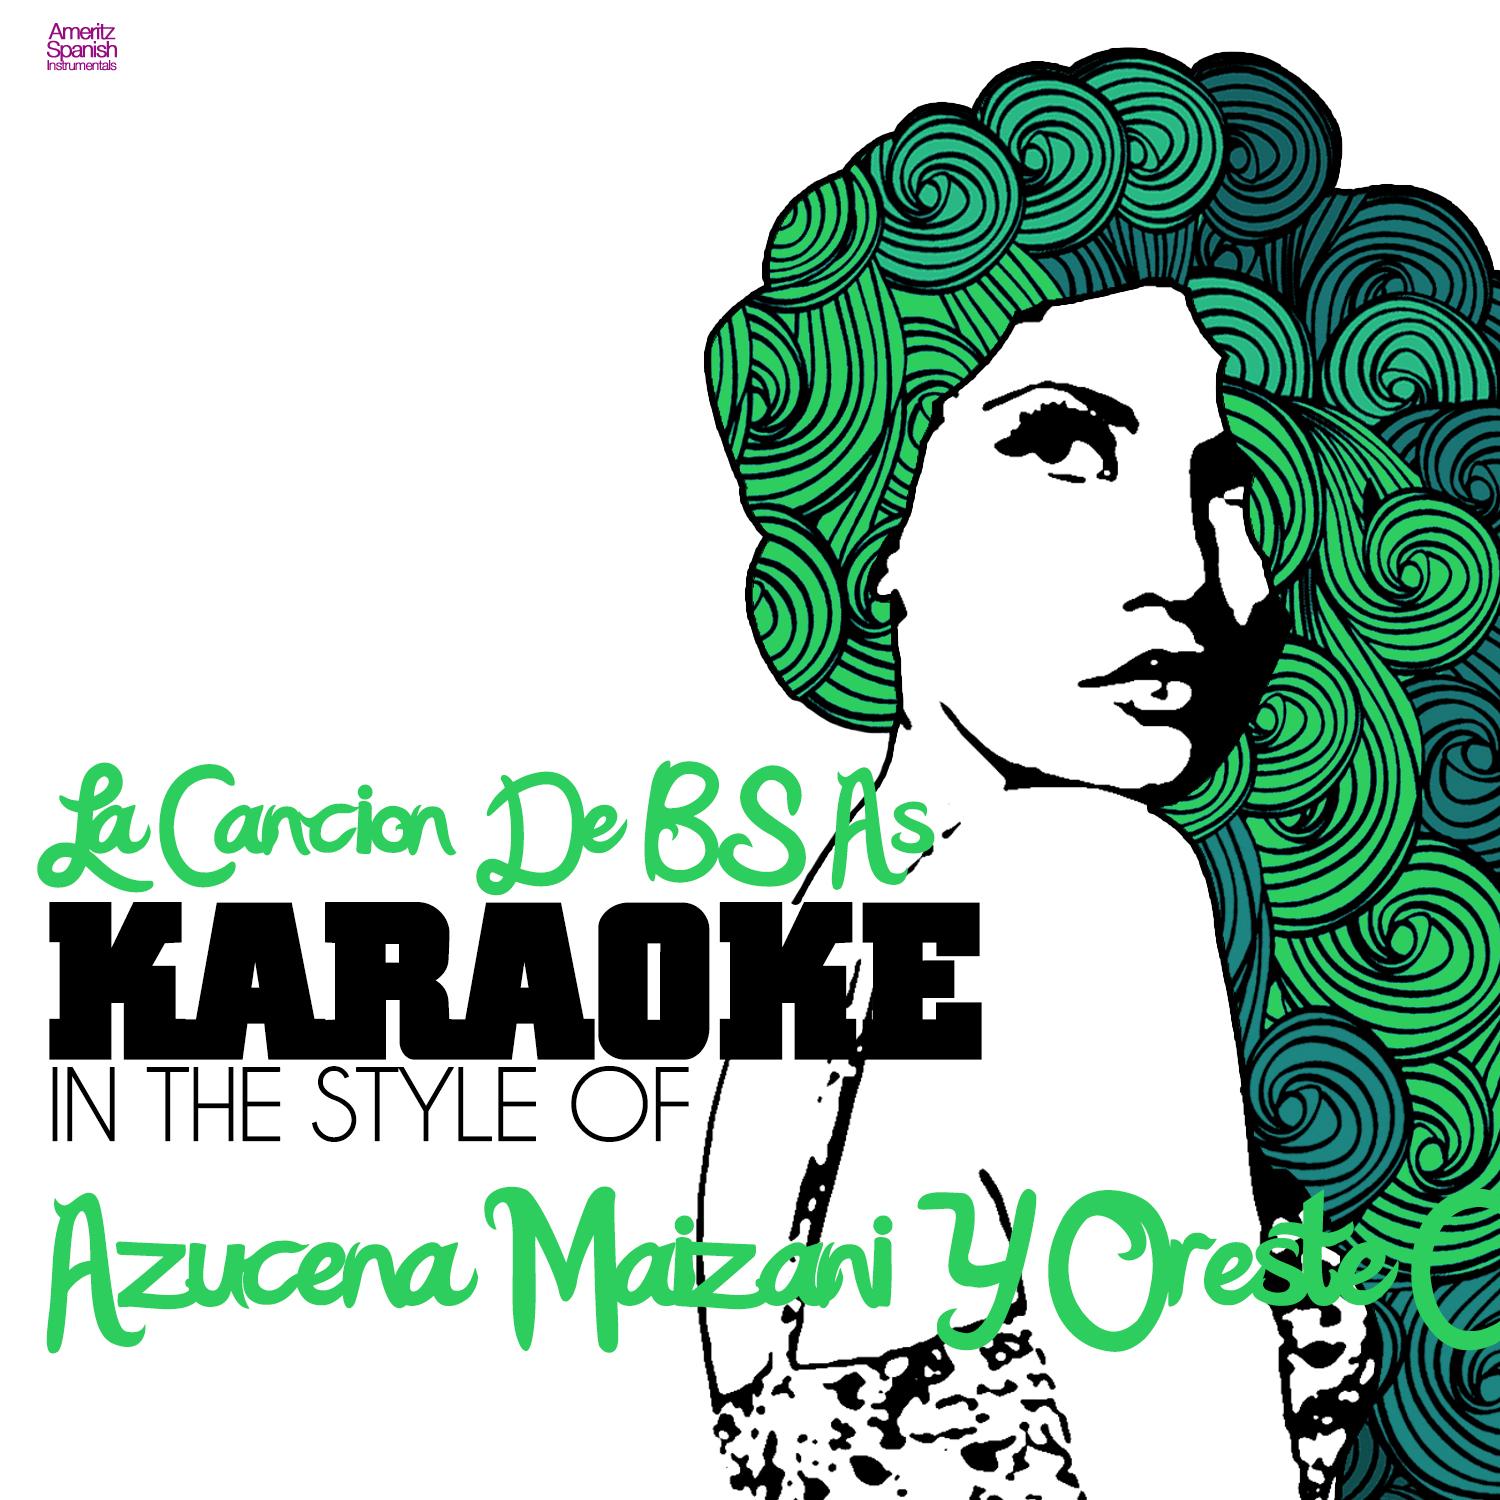 La Cancion De BS As In the Style of Azucena Maizani Y Oreste Cu faro Karaoke Version